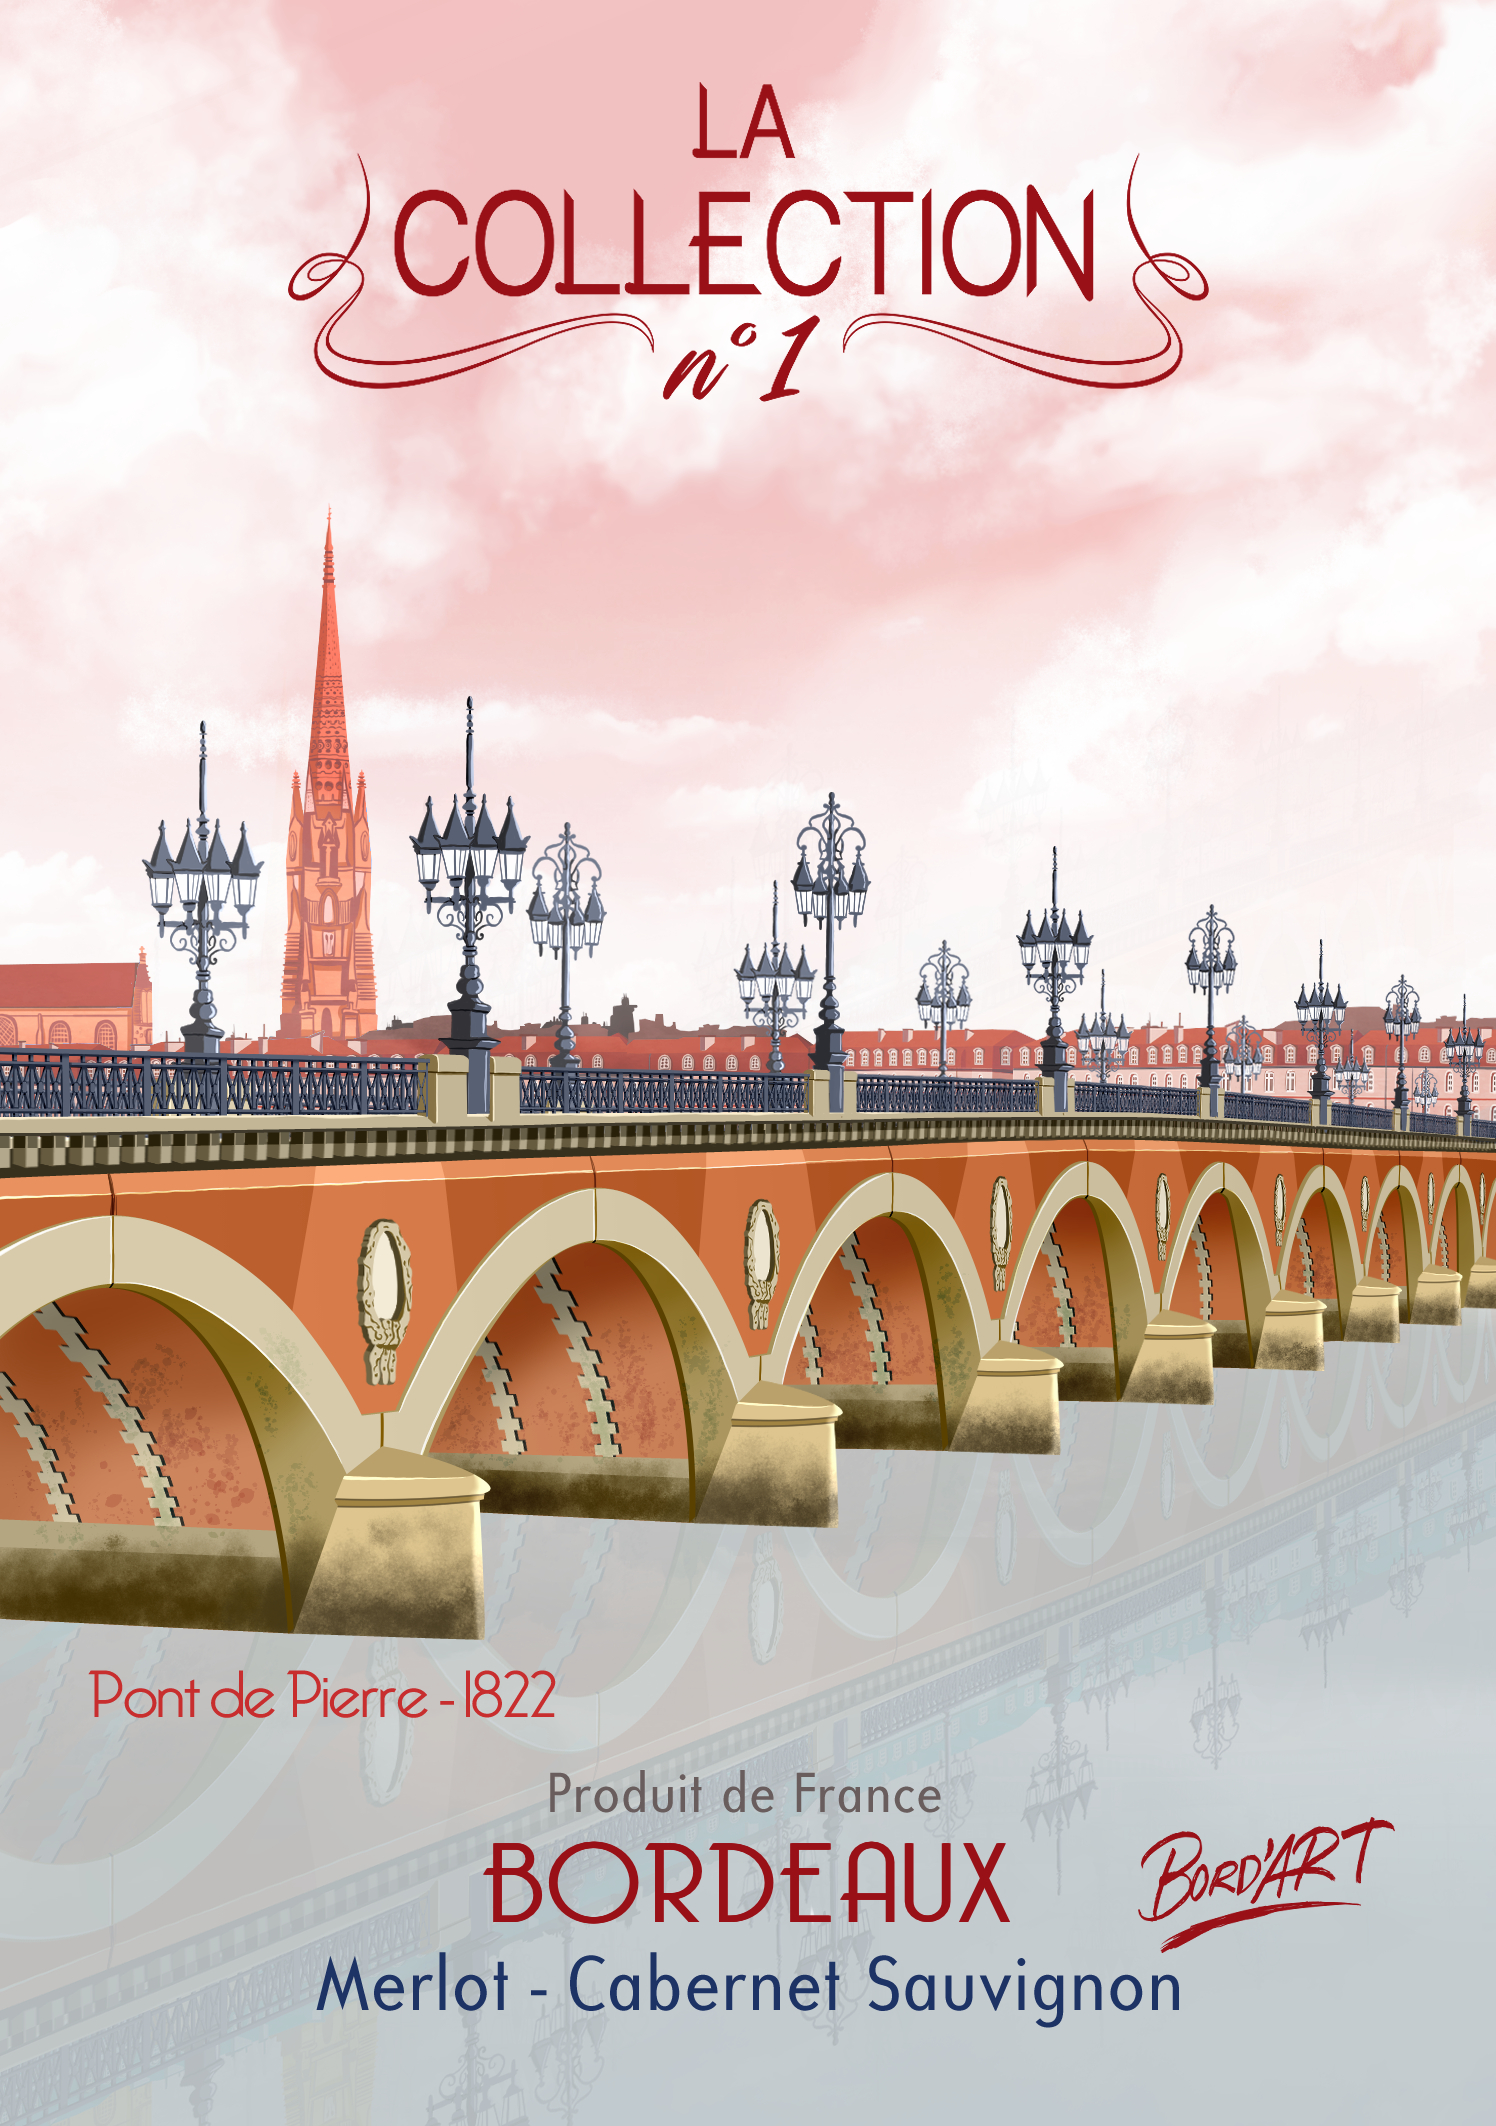 Pont de Pierre-Référence placements